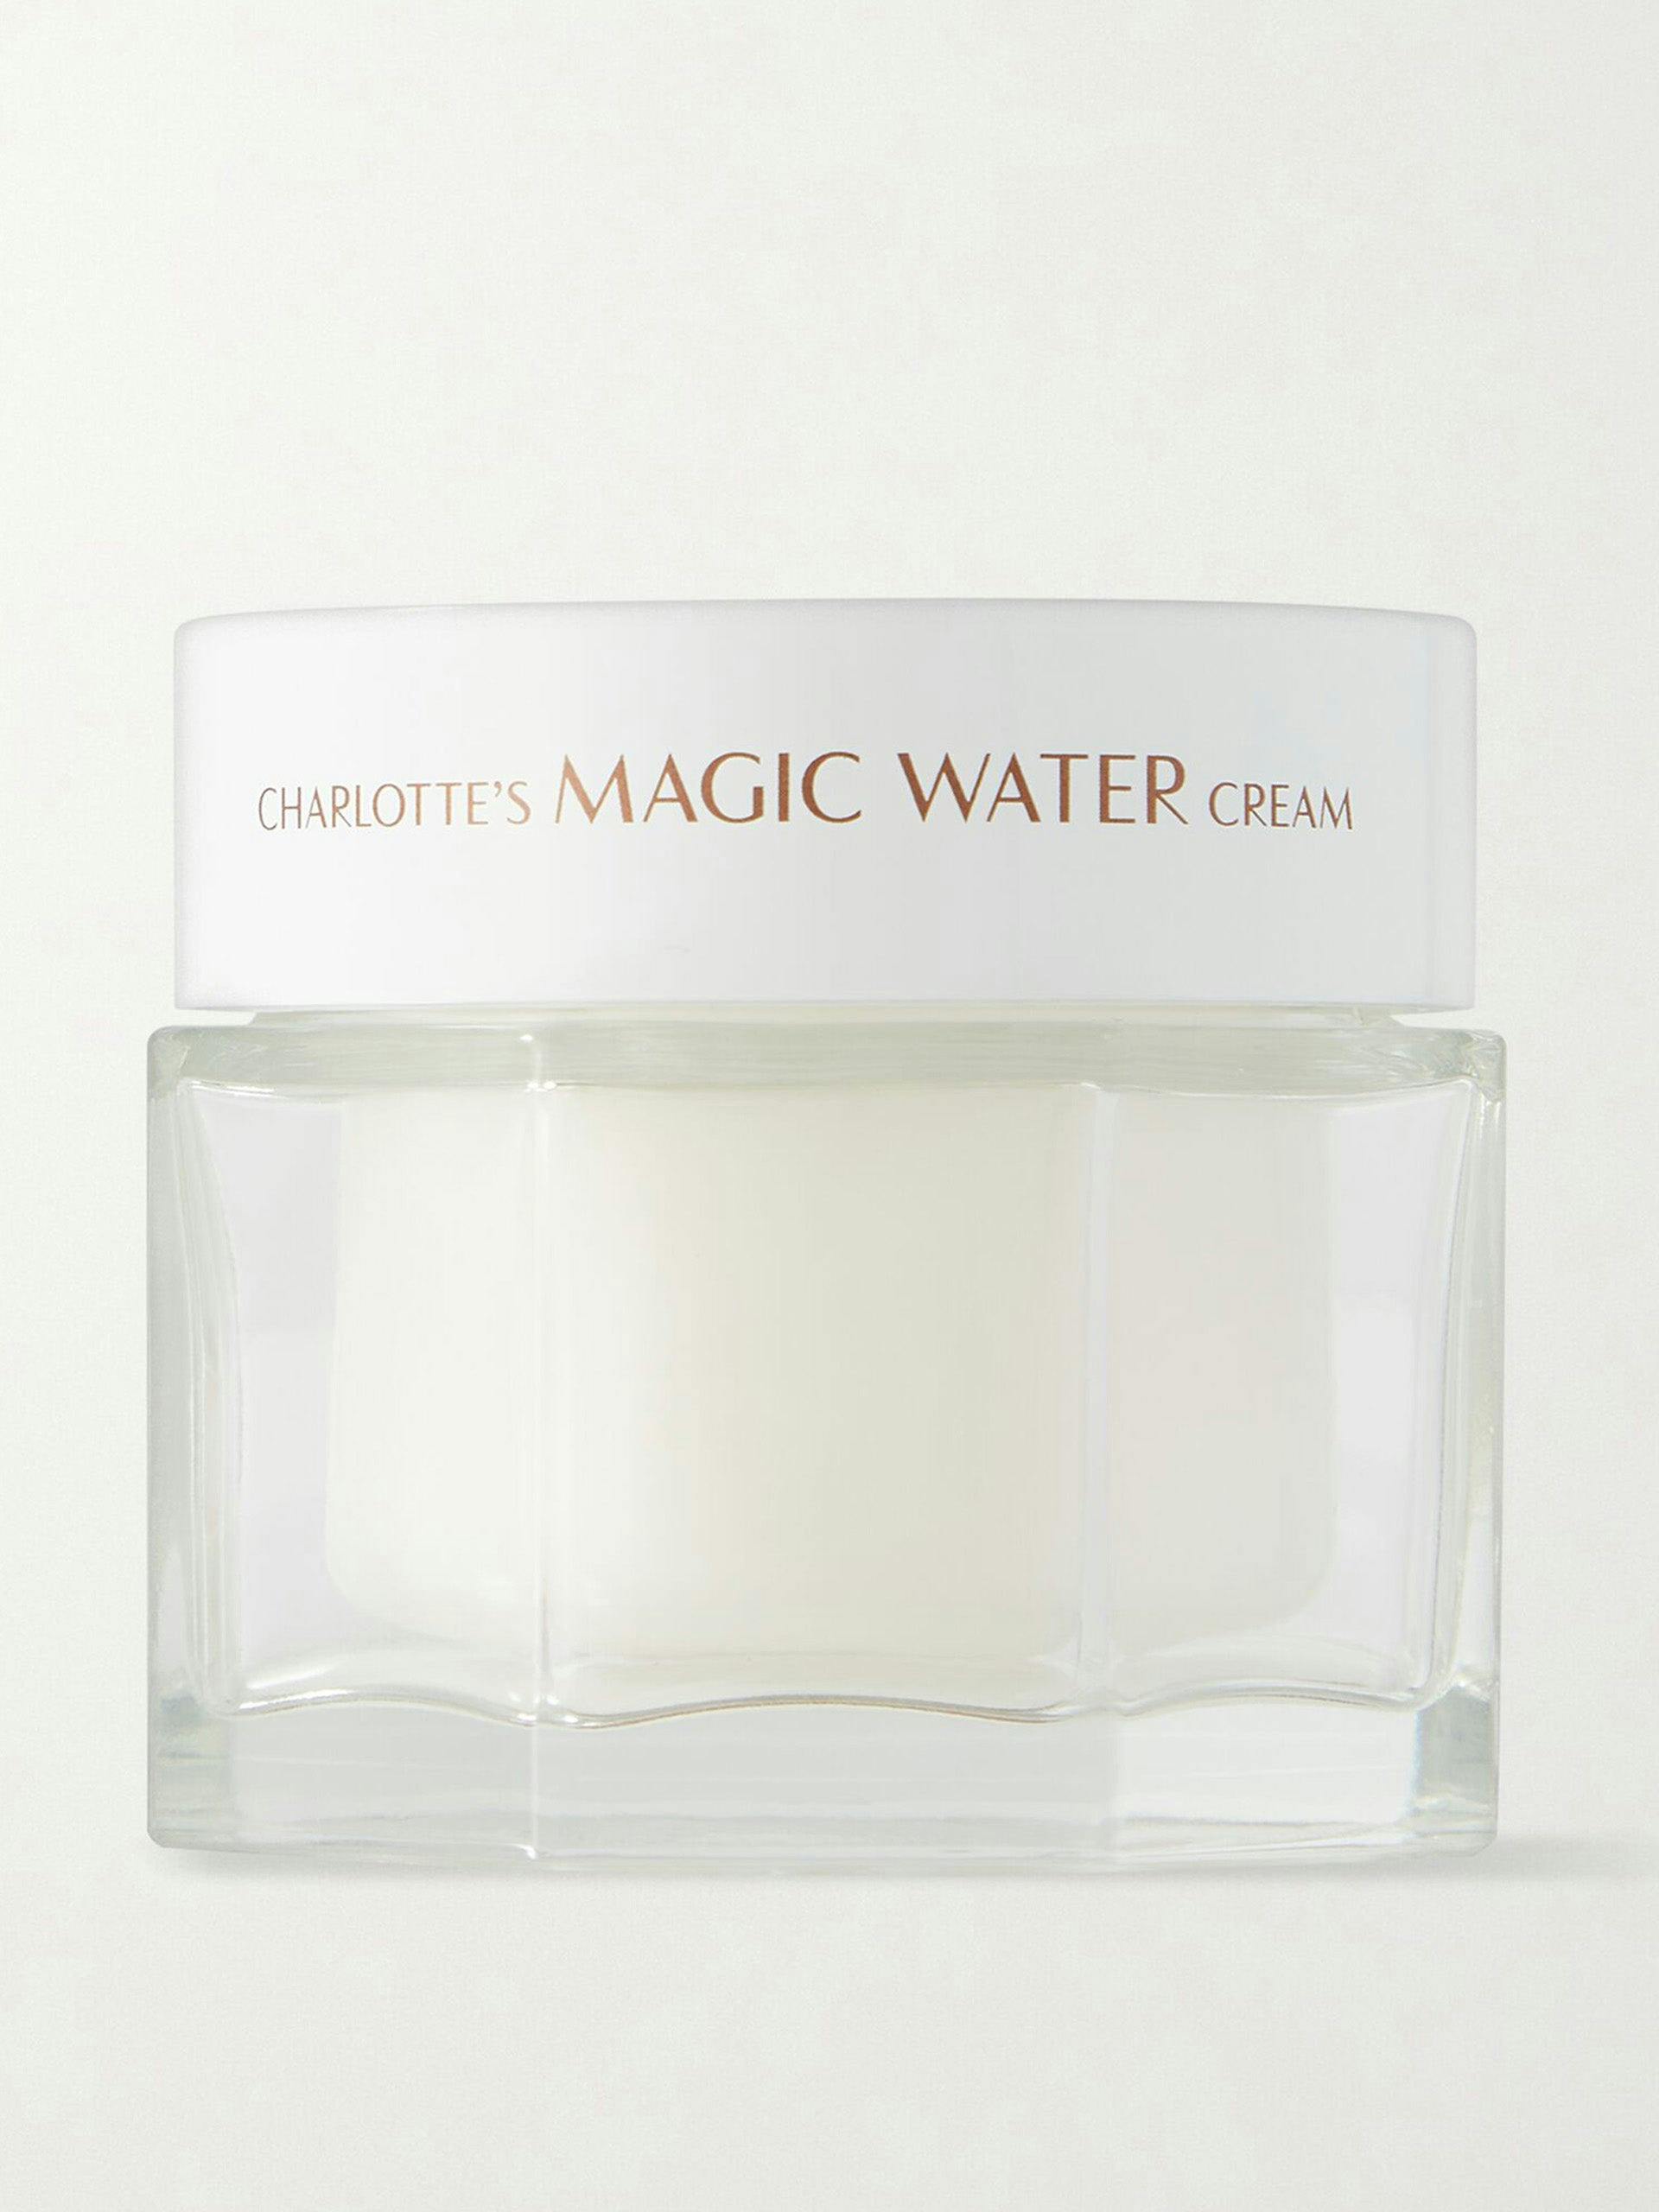 Charlotte’s Magic Water cream